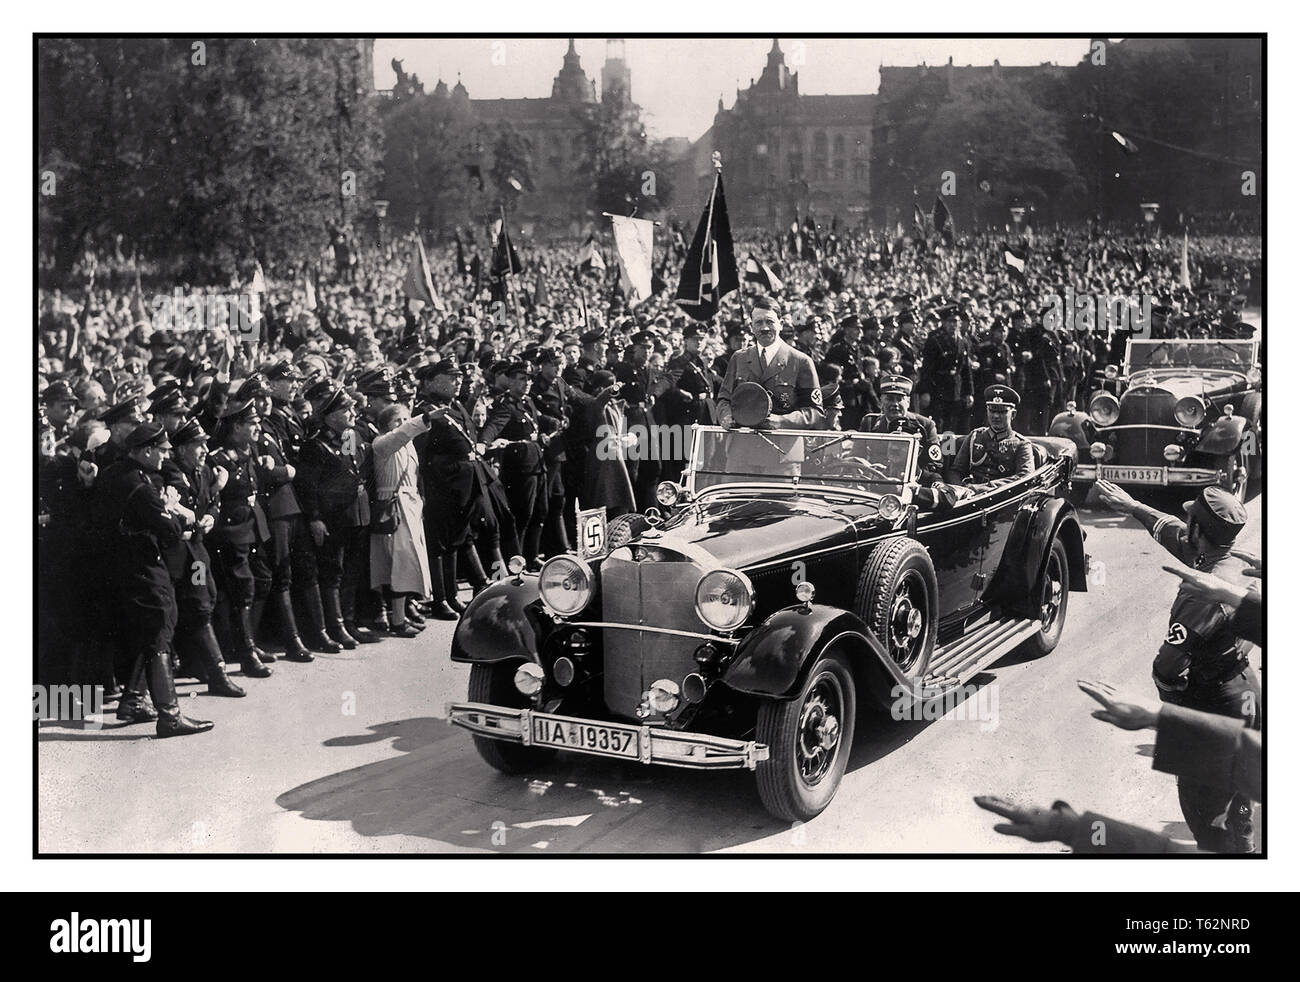 Adolf Hitler en Mercedes voiture ouverte reconnaît la foule extatique de Nuremberg donnant le salut nazi Heil Hitler dans son 1939 Mercedes-Benz 770K Torpédo brut motorcar dont il utilisé pendant les défilés nazis Banque D'Images